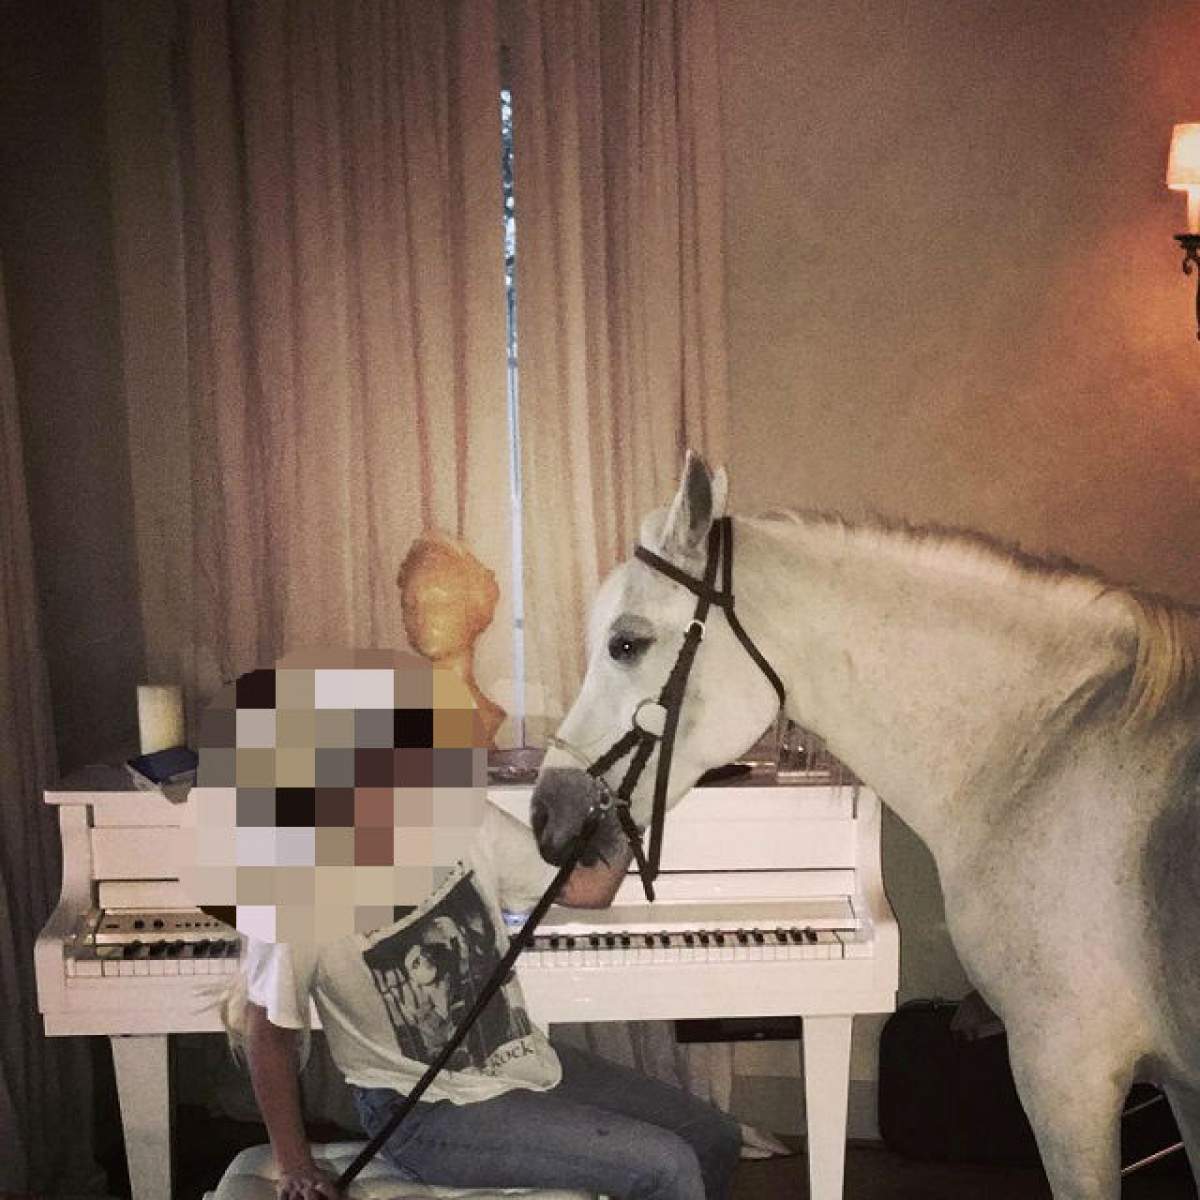 O vedetă a băgat calul în casă şi s-a fotografiat cu el! Despre cine este vorba?